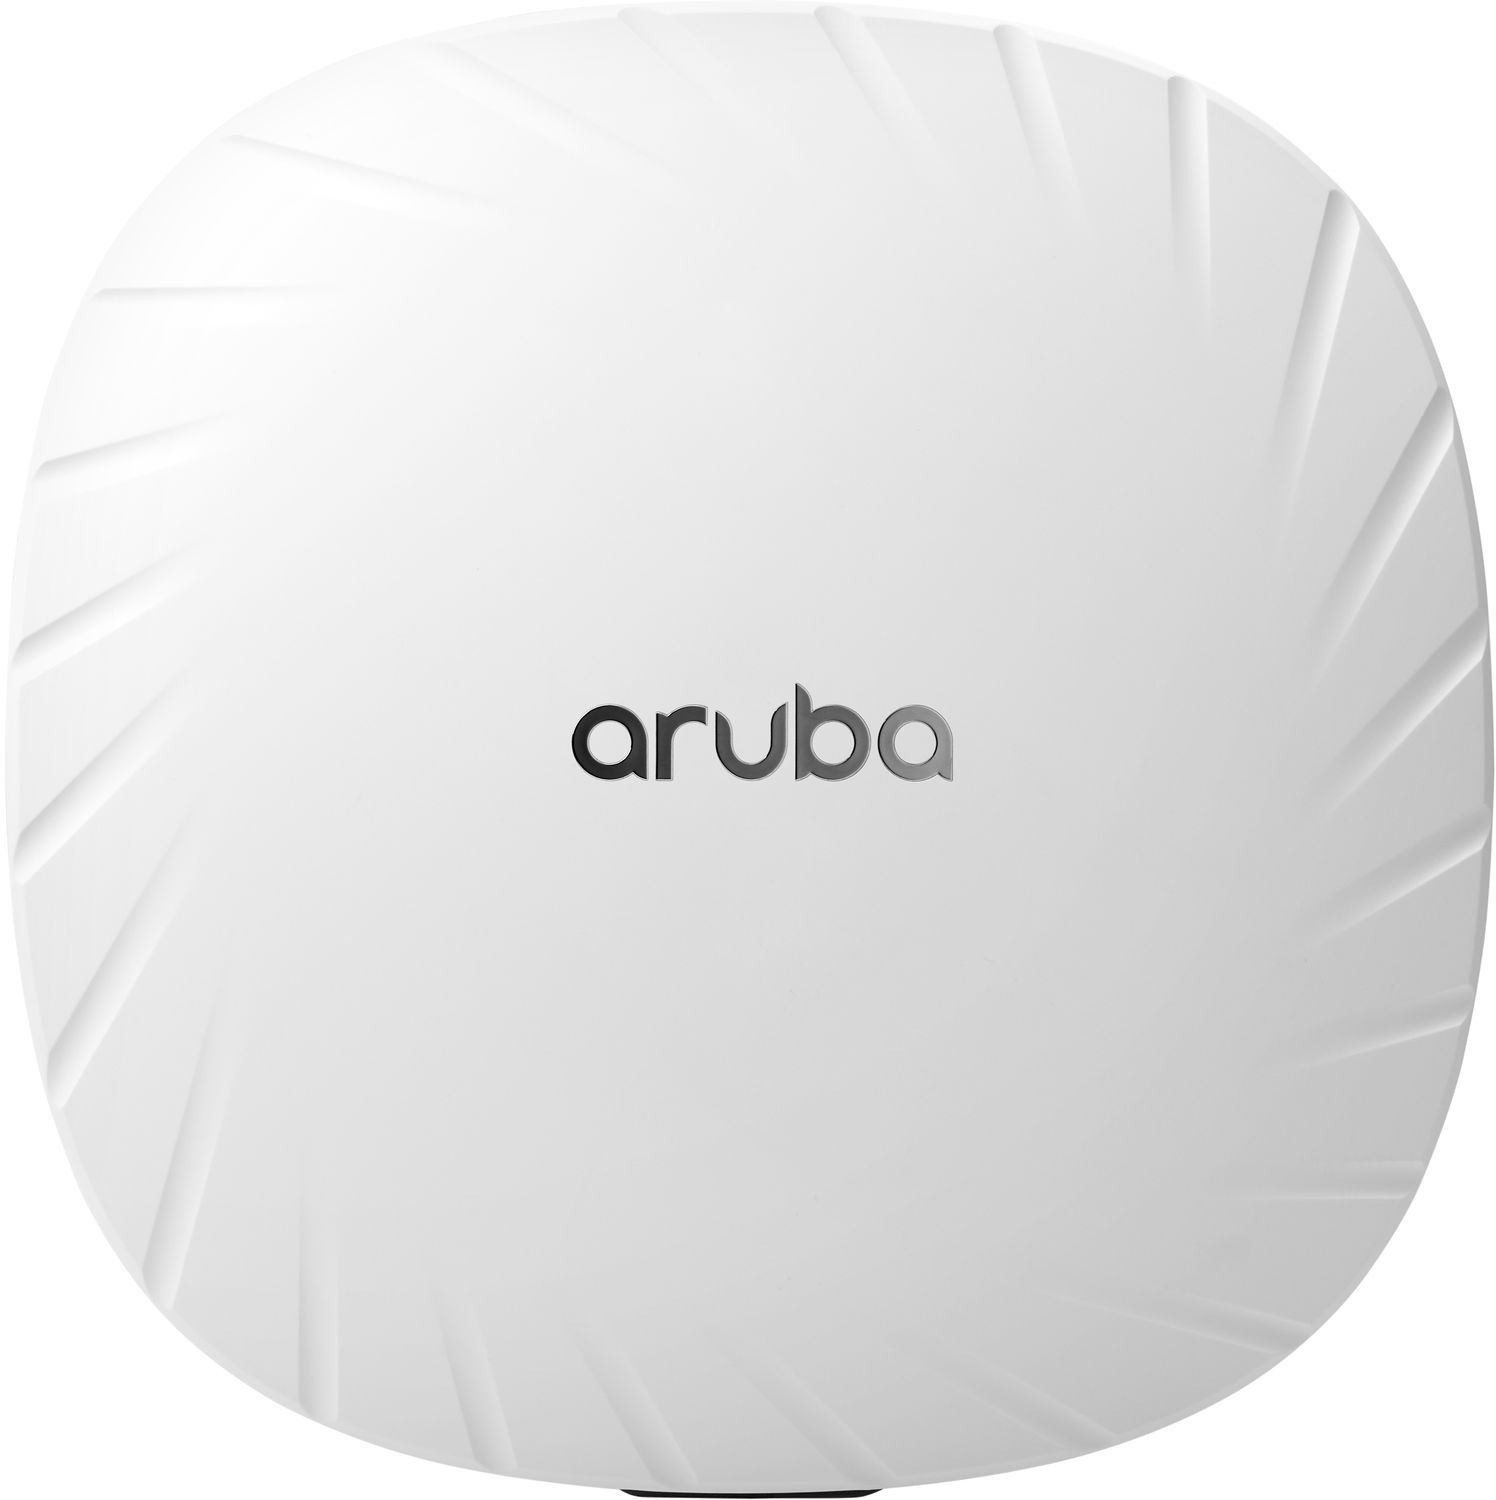 Aruba AP-515 (RW) Unified AP, 802.11ax AP with 4x4:4 + 2x2:2MU